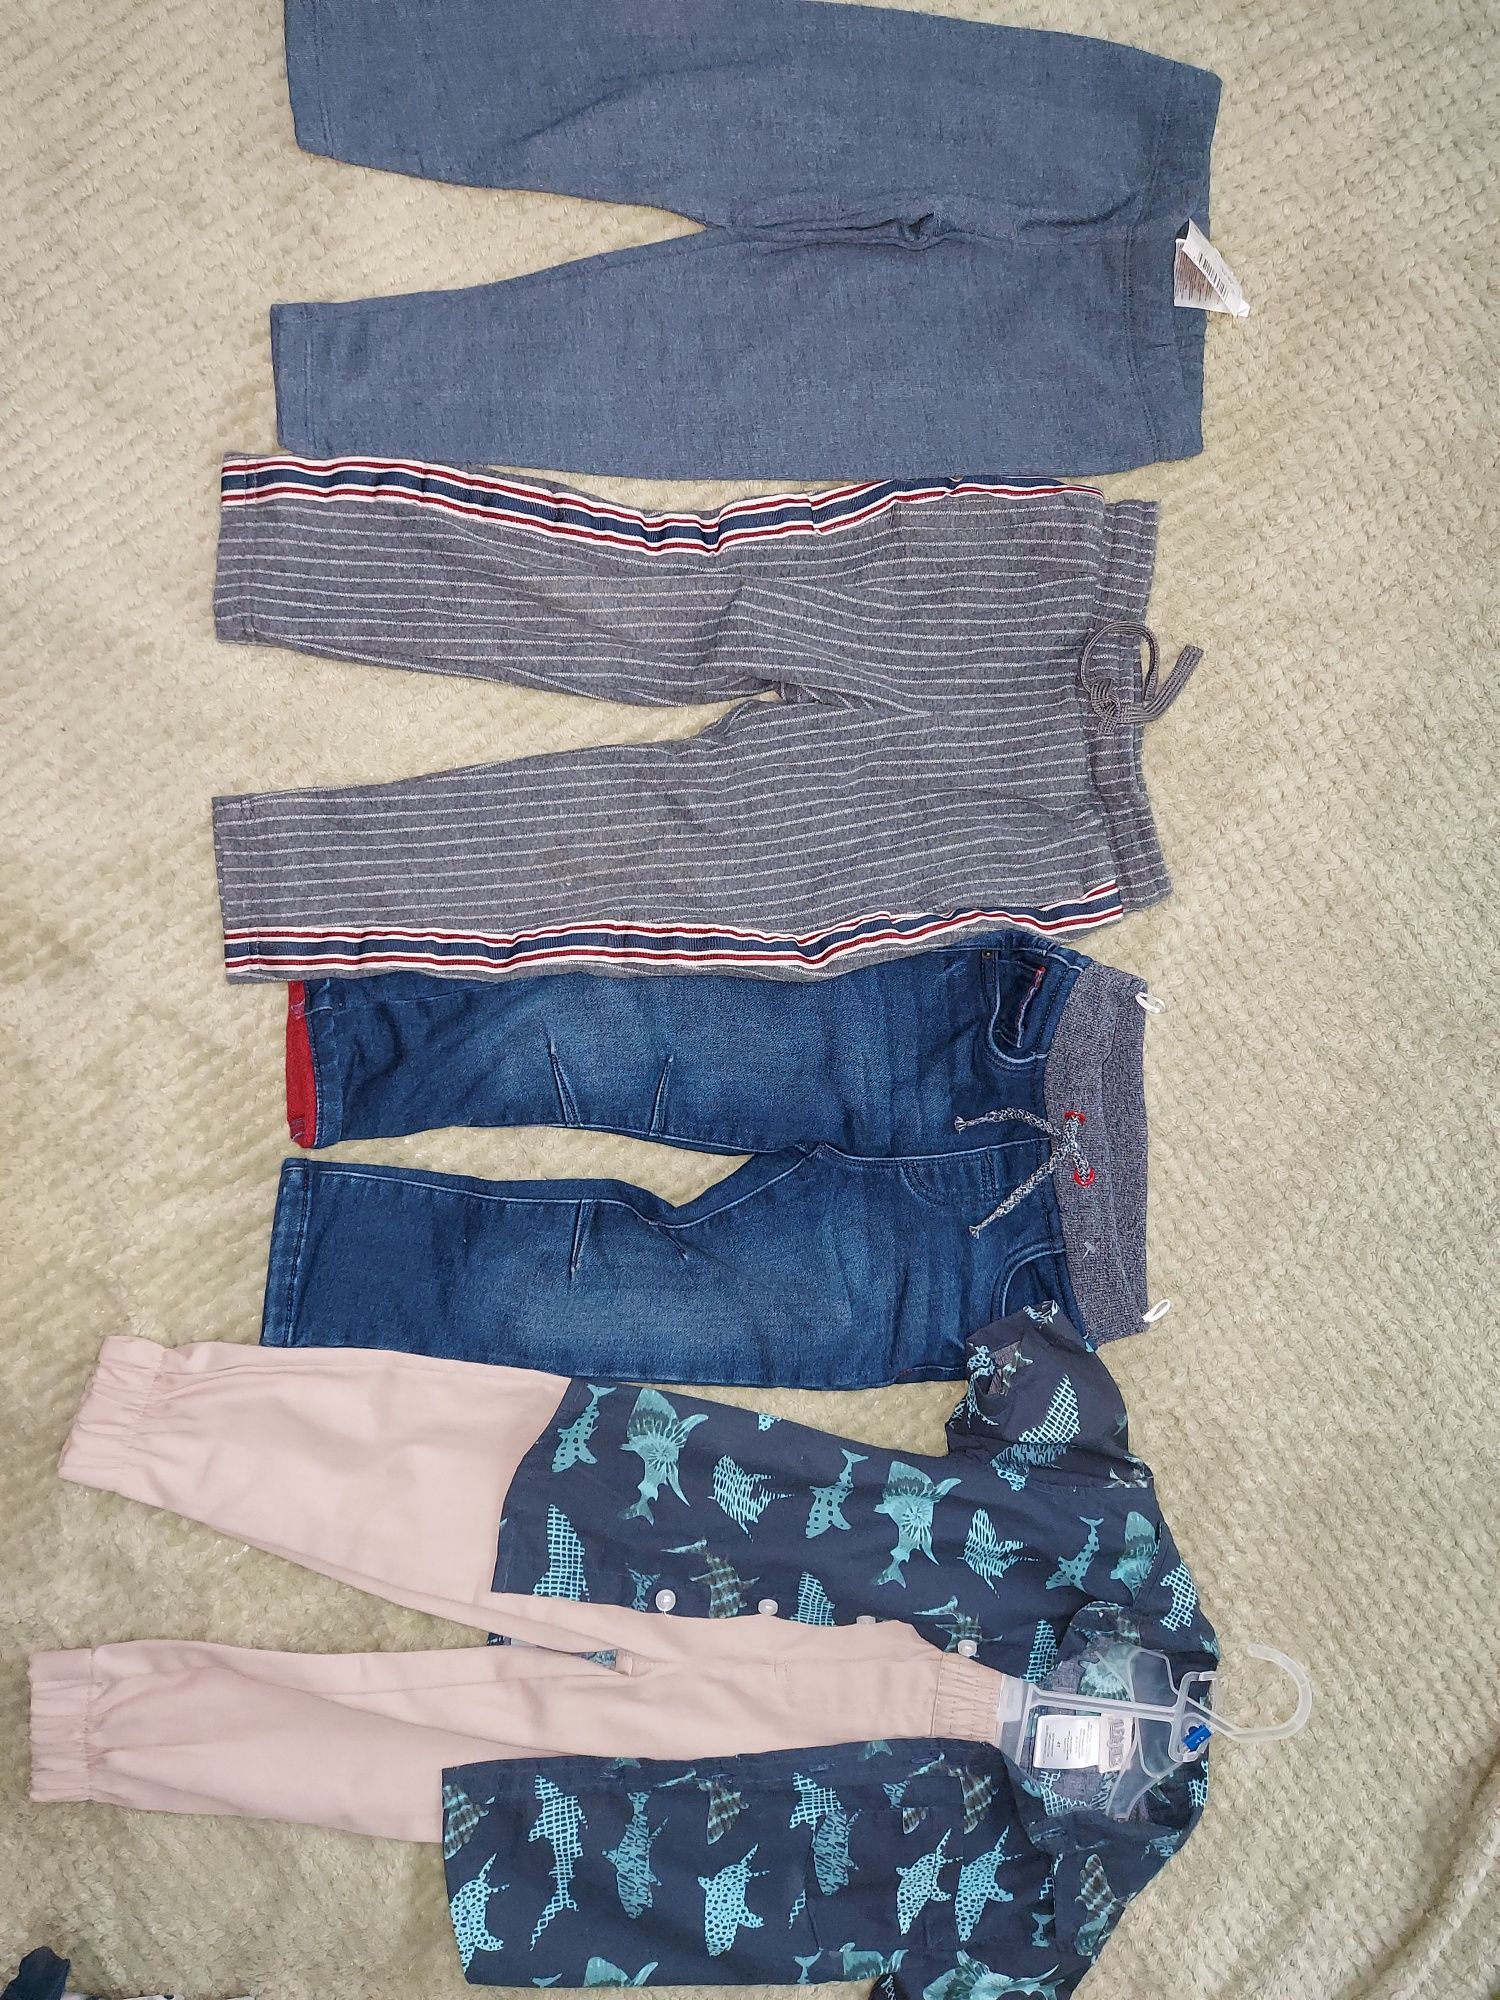 Pantaloni, pulovere, articole pentru băieți cu vârste între 3-5 ani